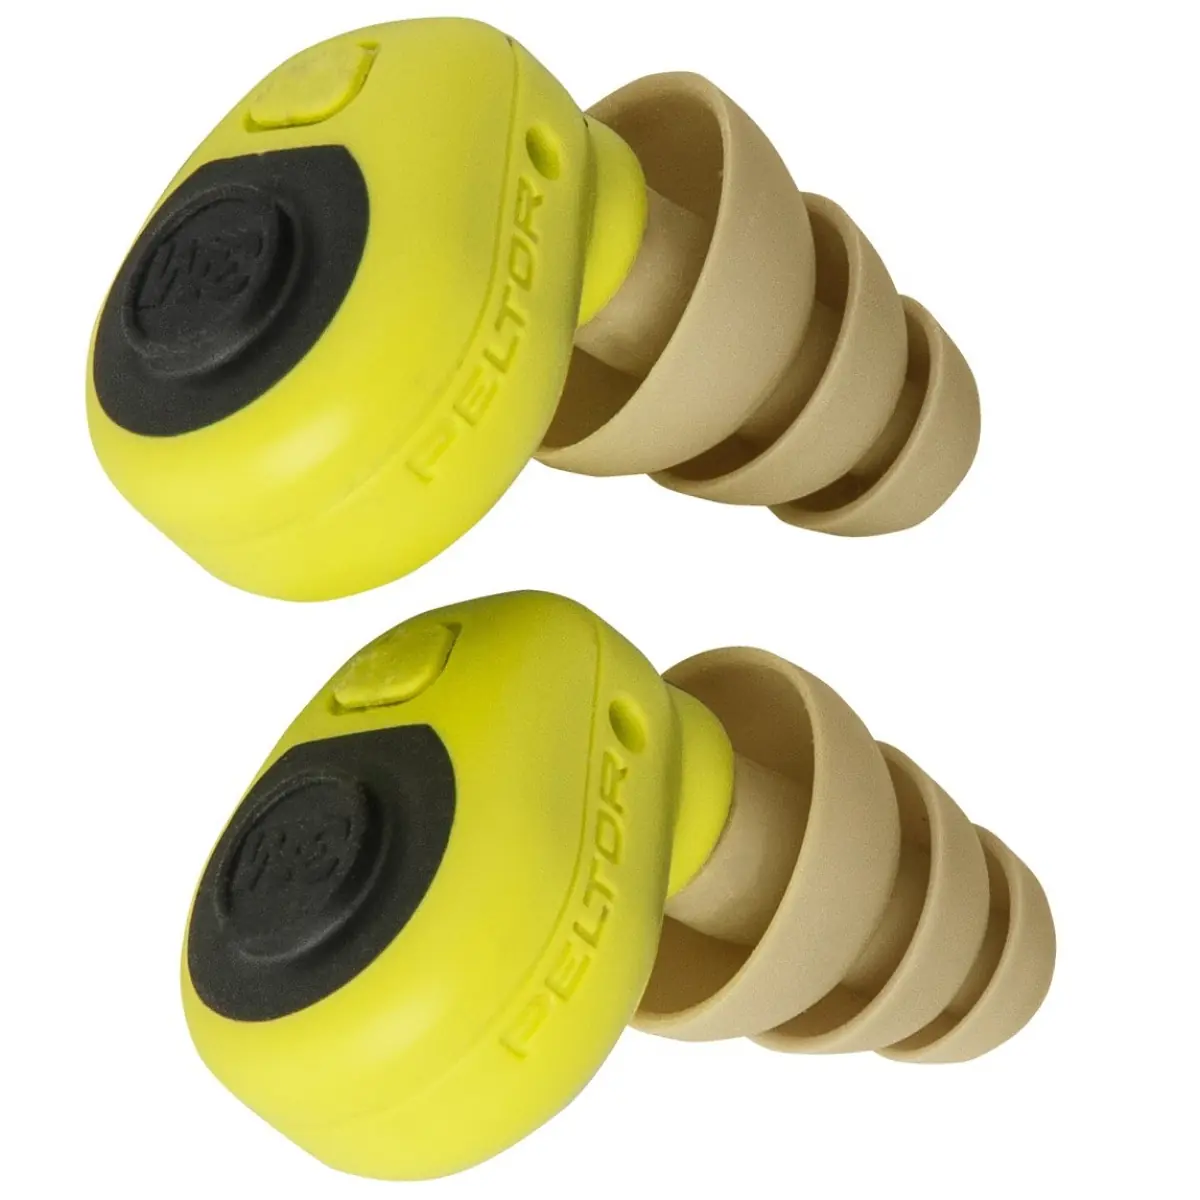 Oreillettes de protection auditive 3M Peltor EEP-100 / CHASSE ADDICT